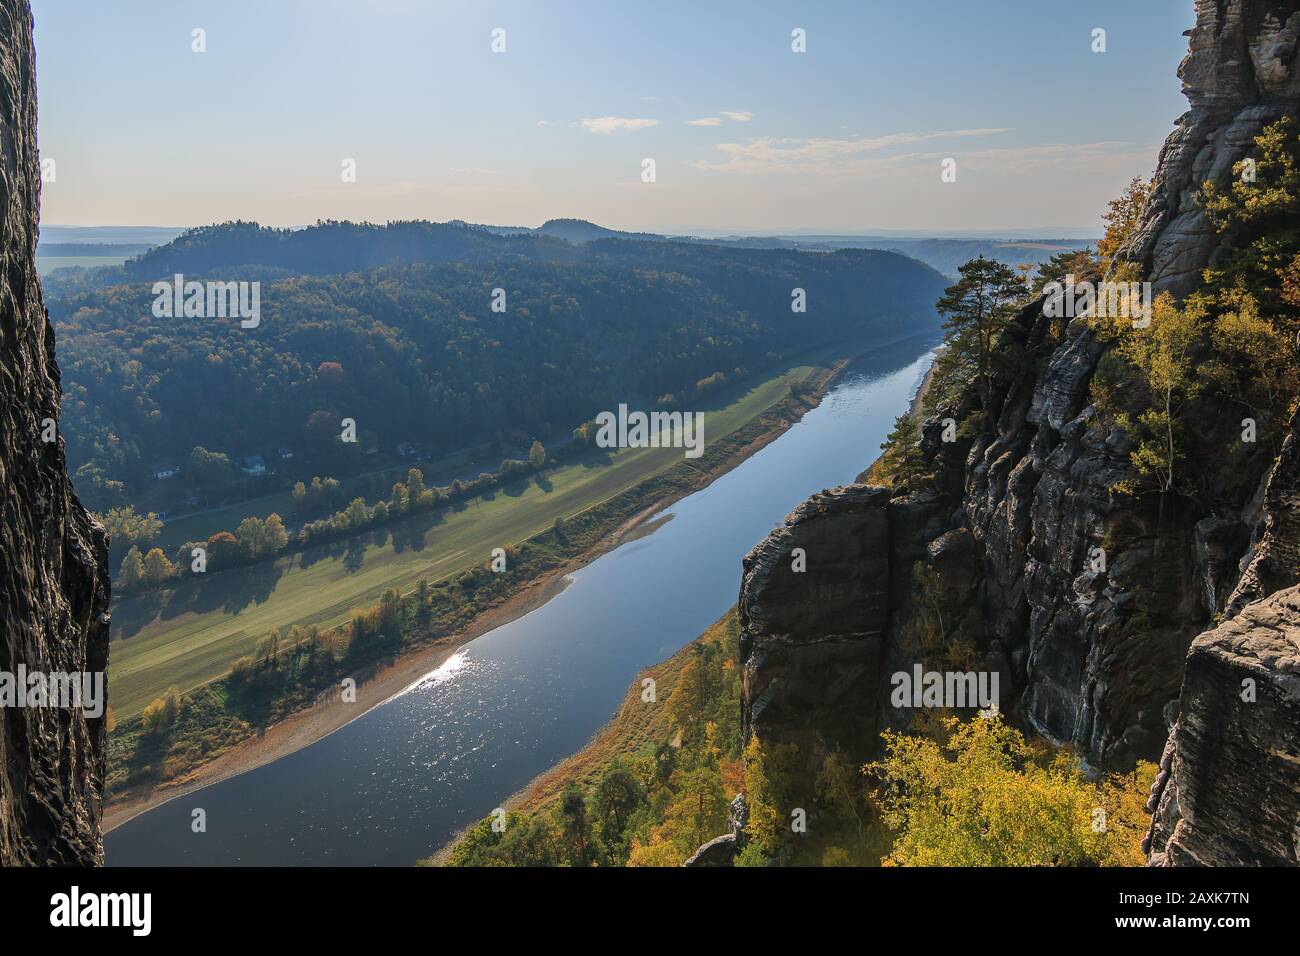 Panoramablick auf das Elbtal in der Sächsischen Schweiz von der Bastei-Brücke mit Felsen des Elbsandsteingebirges. Sonniger Tag mit blauem Himmel Stockfoto